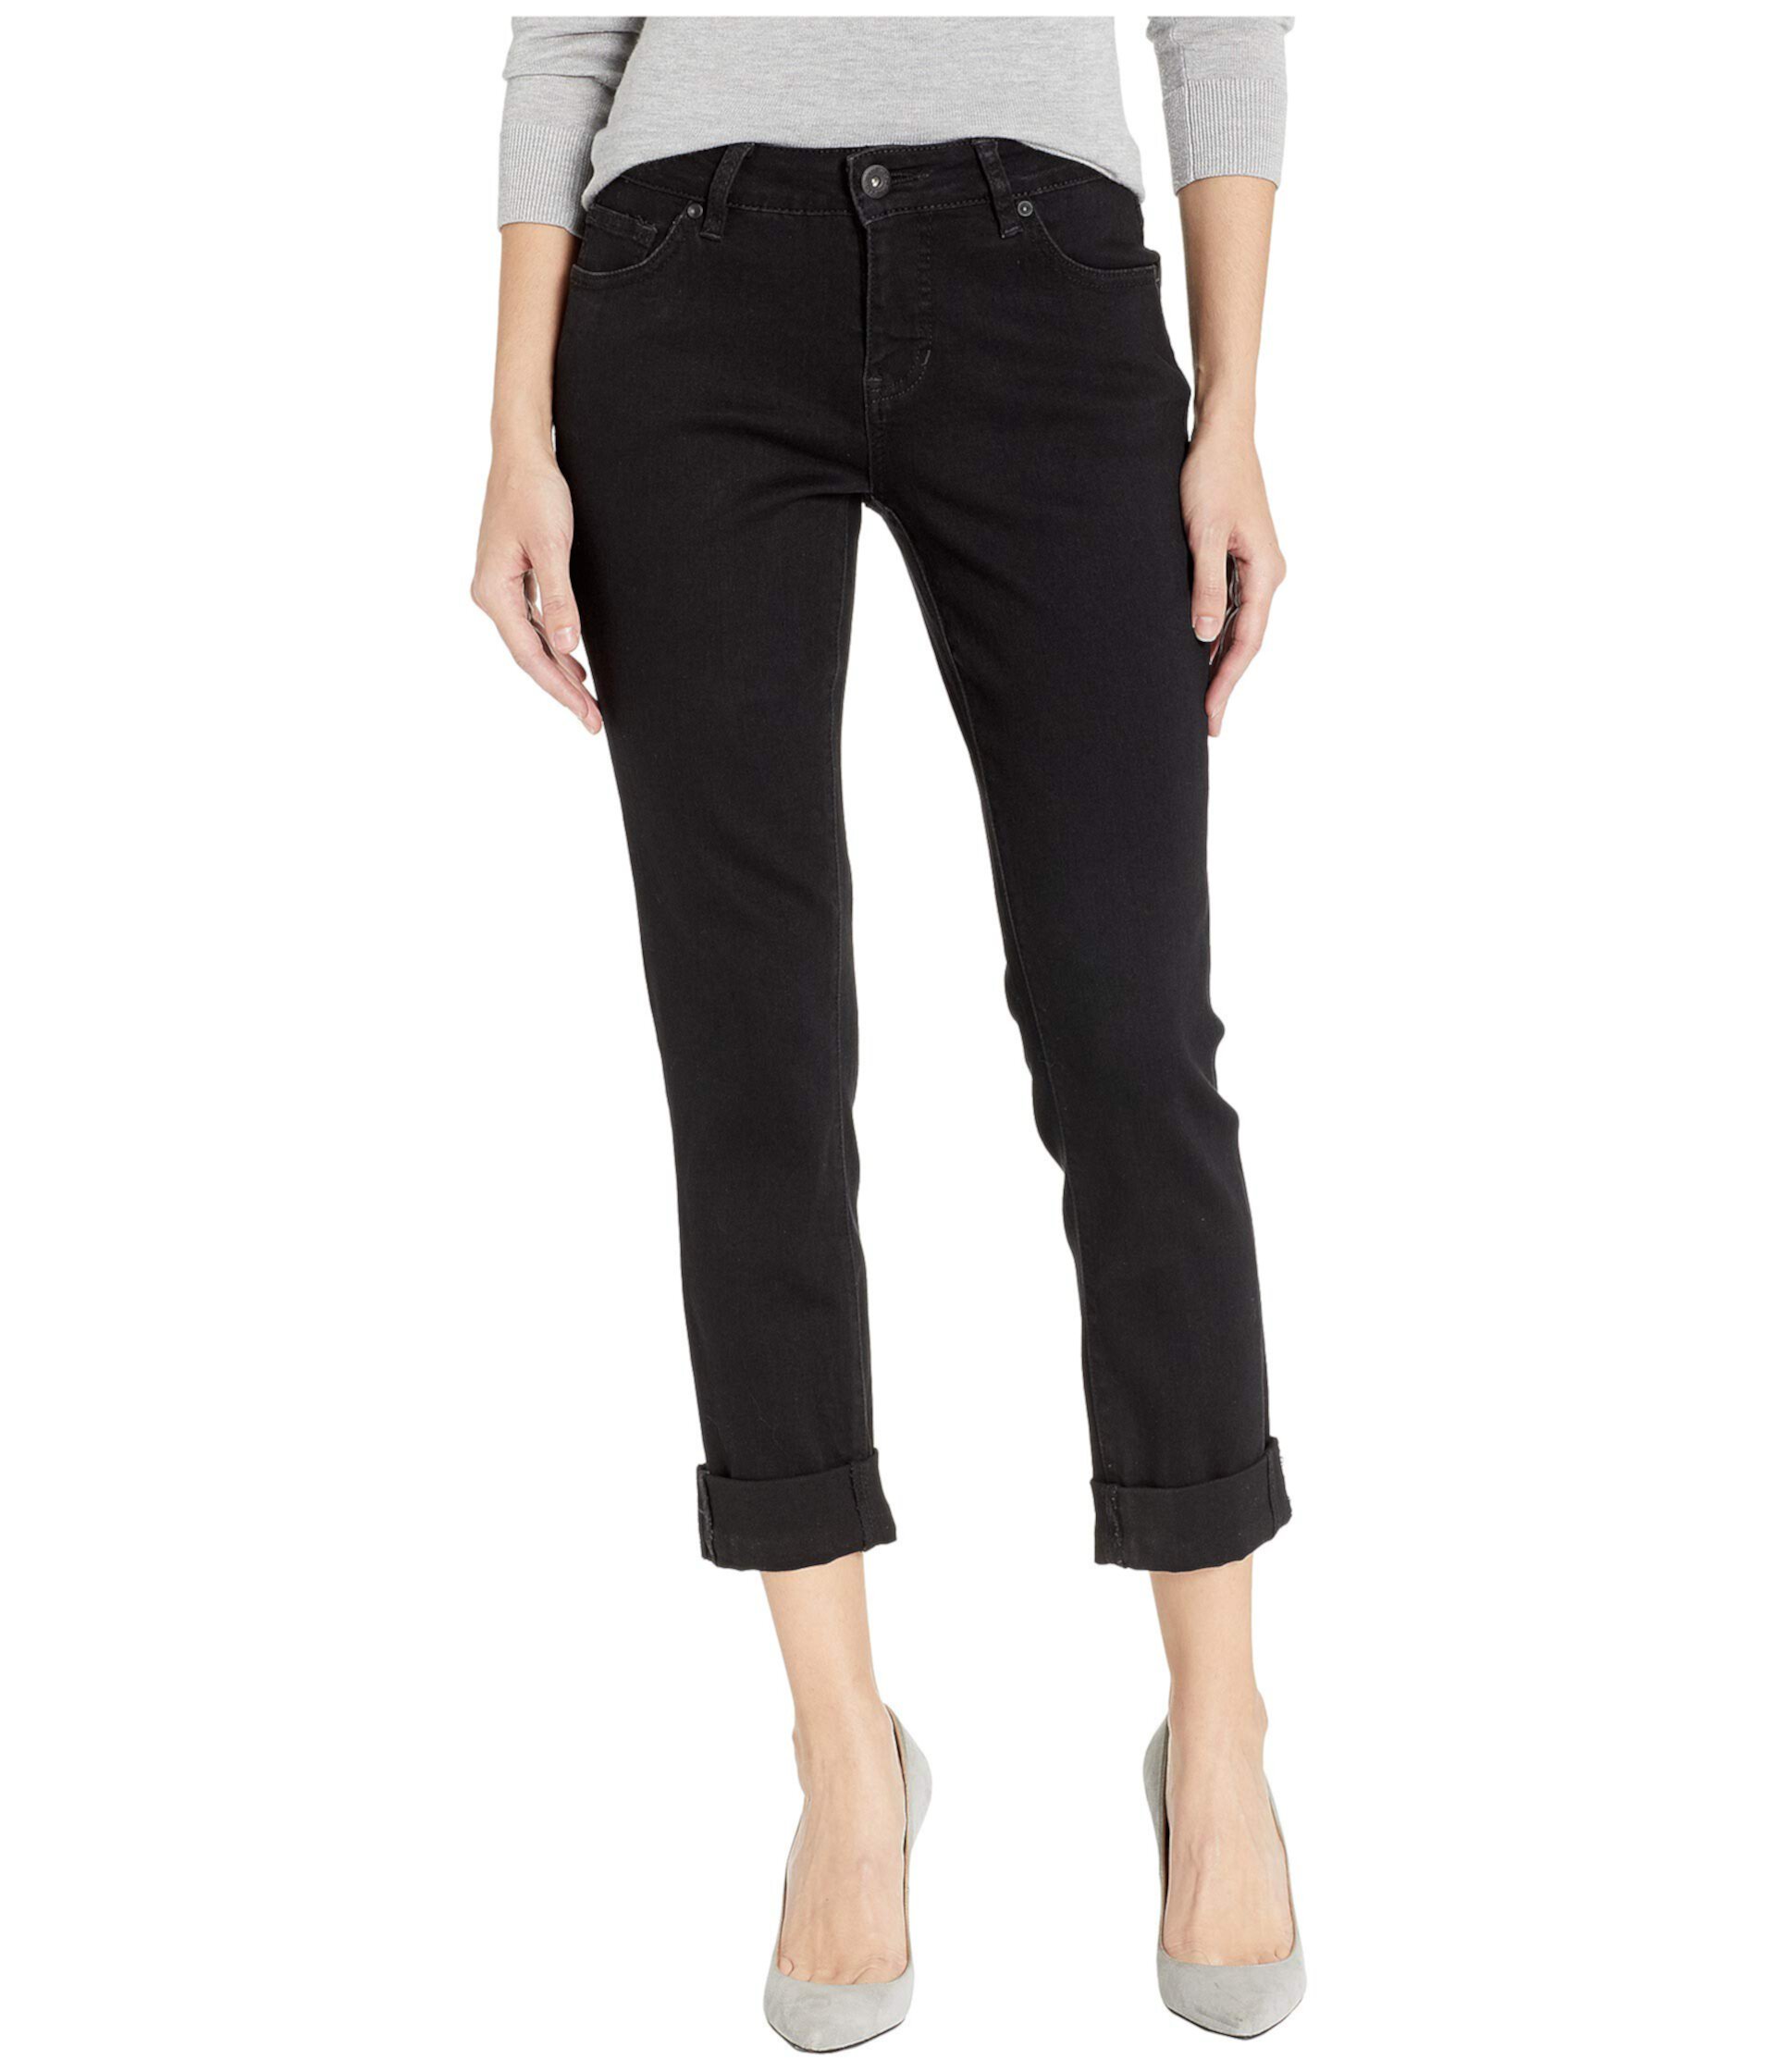 Джинсовые джинсы с перекрестной штриховкой Carter Girlfriend Jag Jeans